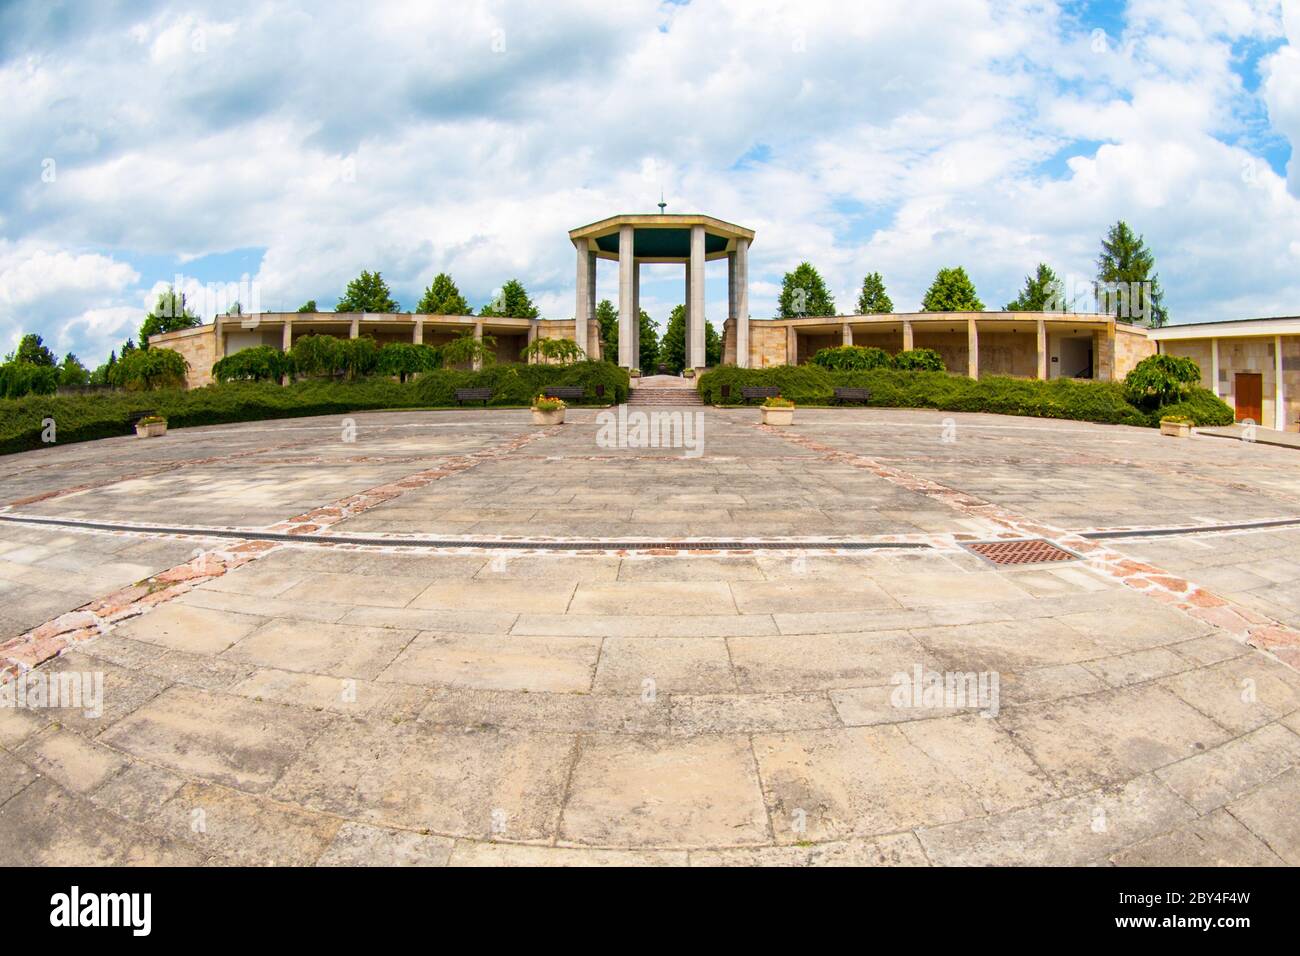 Denkmal des Weltkrieges an einem Ort des ehemaligen Dorfes Lidice, das von deutschen Truppen als Repressalien für die Ermordung des Reichsprotektors Reinhard Heydrich völlig zerstört wurde Stockfoto